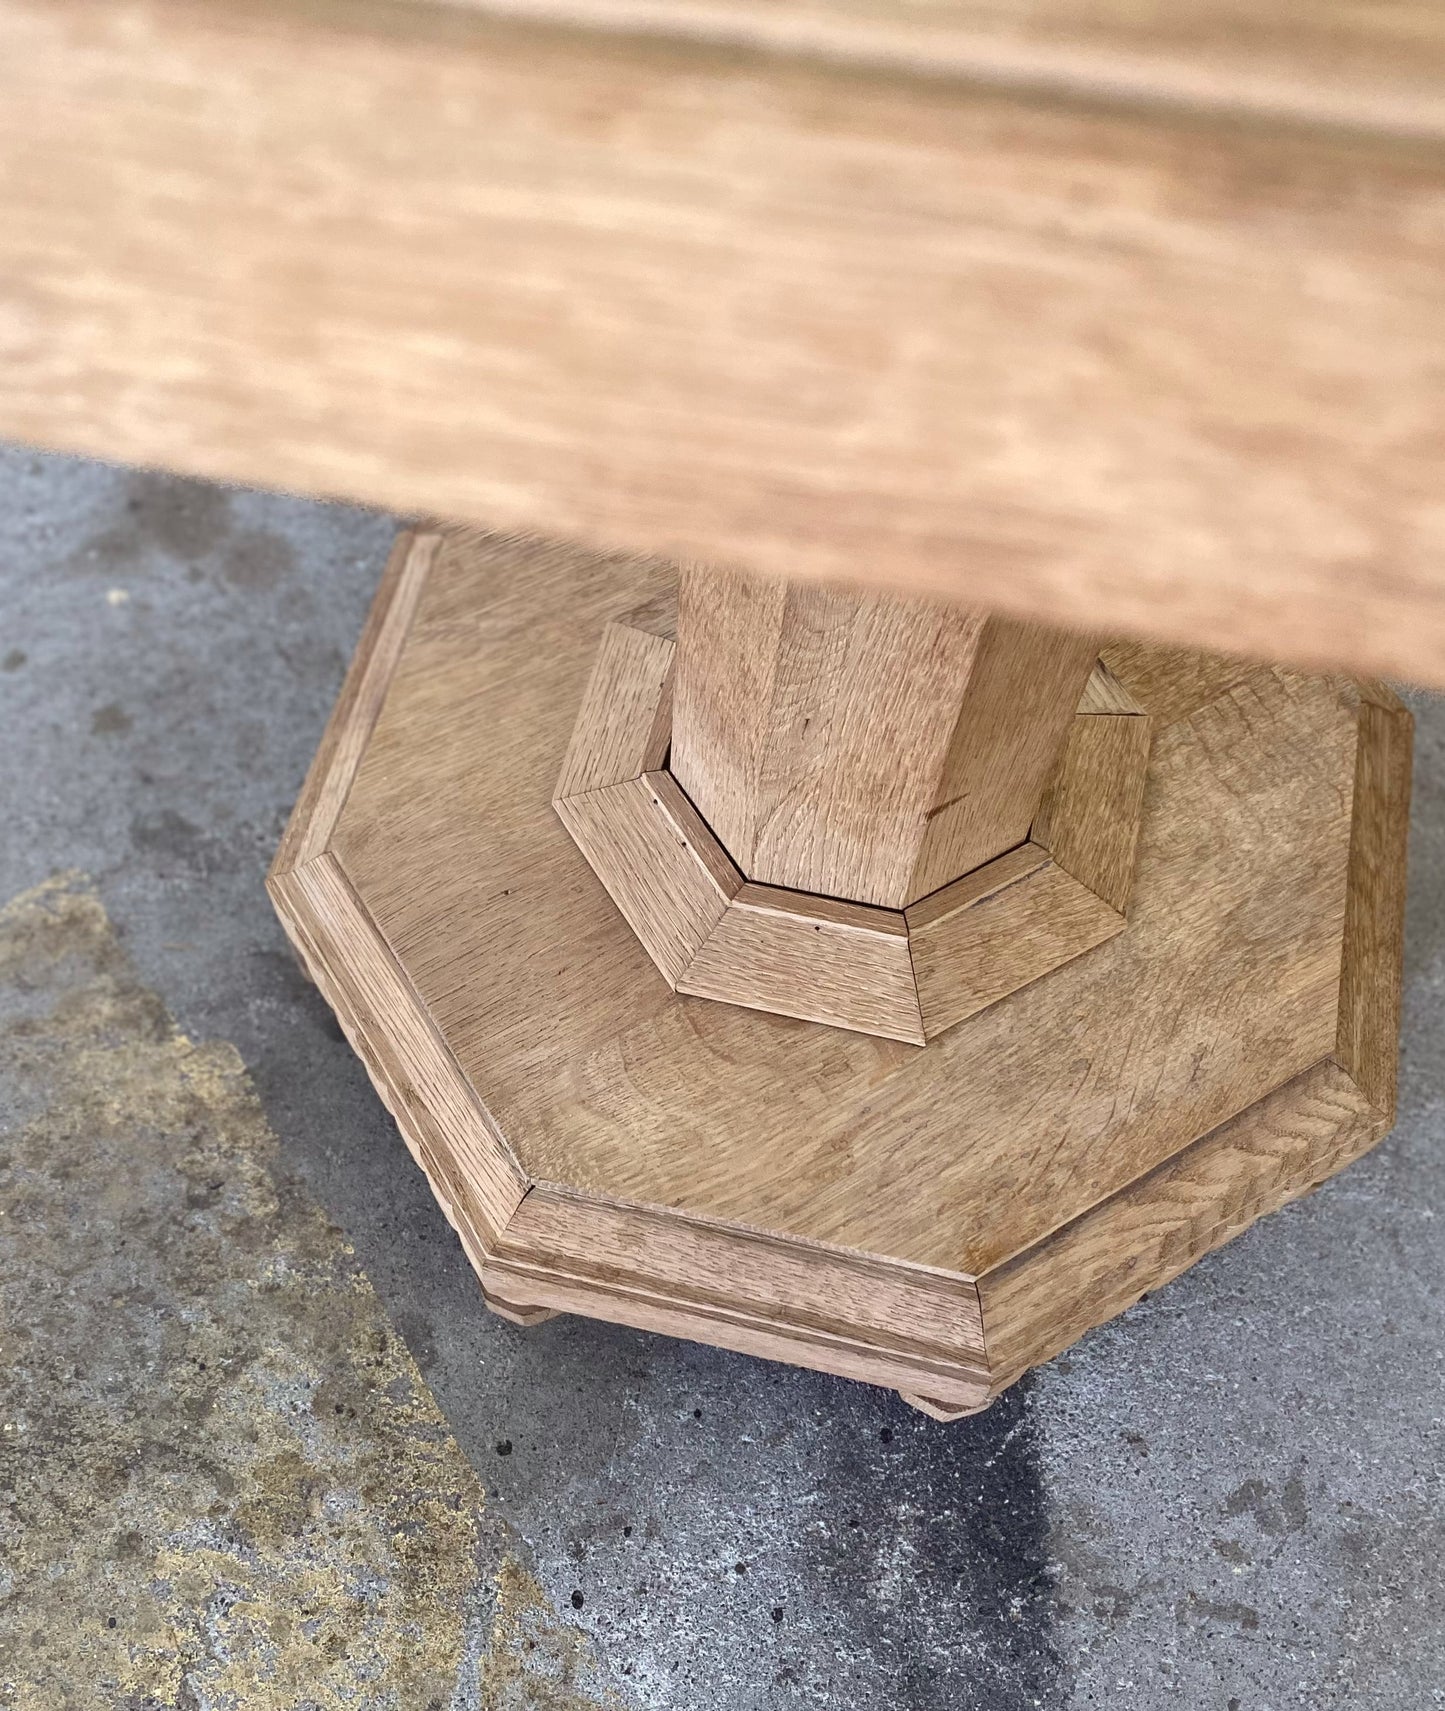 octagonal oak Table